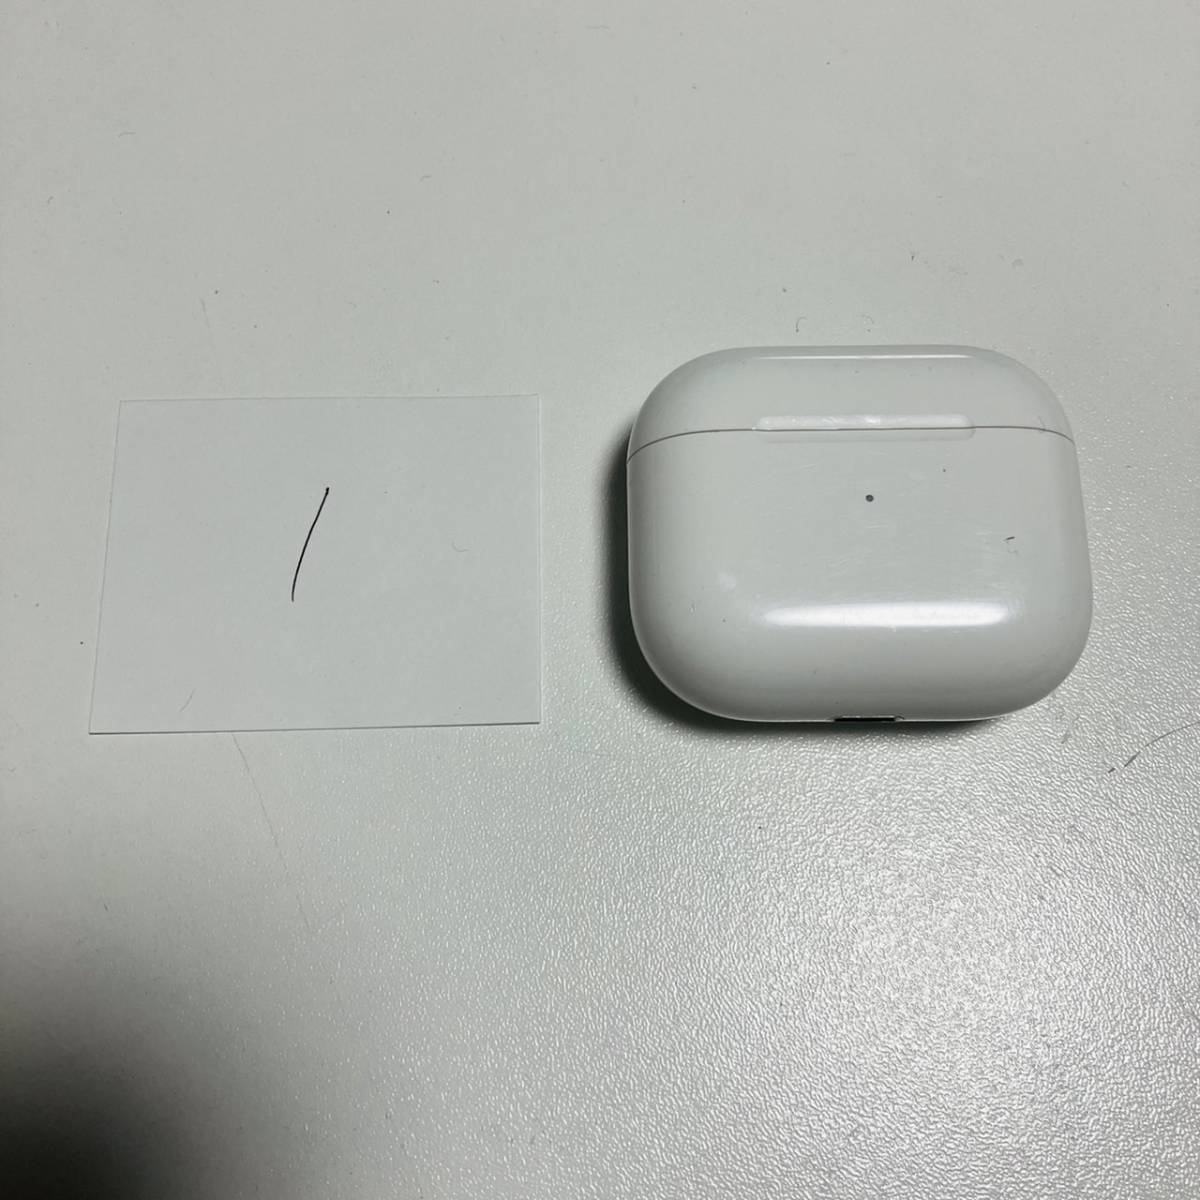 送料無料 最安 Apple 純正 Airpods アップル エアーポッズ 第3世代 